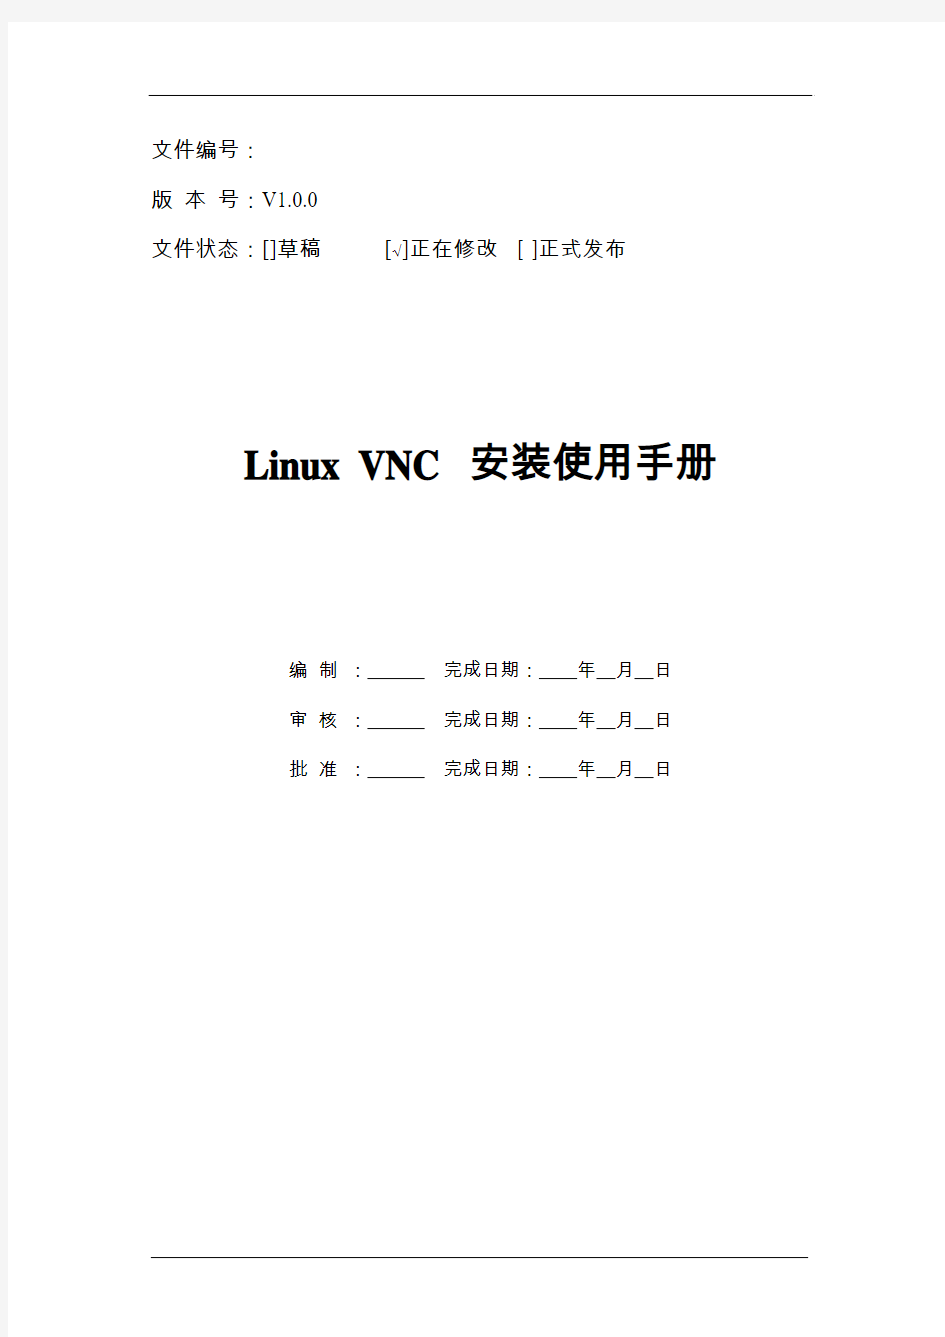 VNC for Linux Red Hat安装使用手册